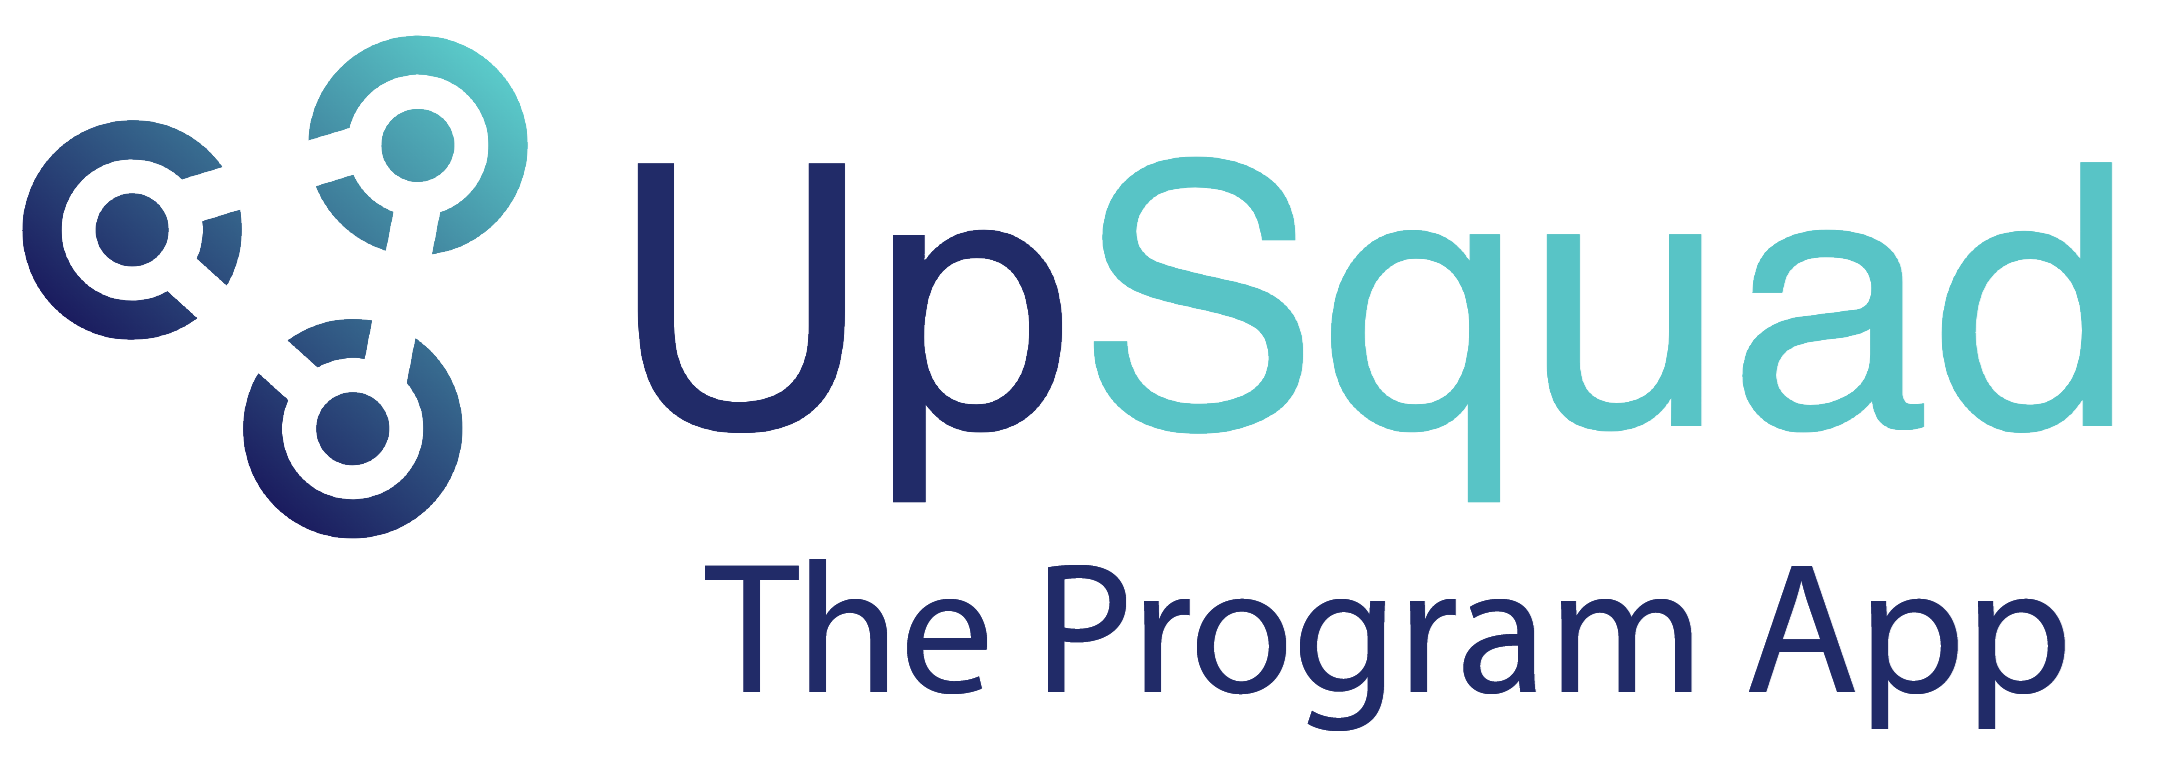 UpSquad_ProgramApp_Logo_v2